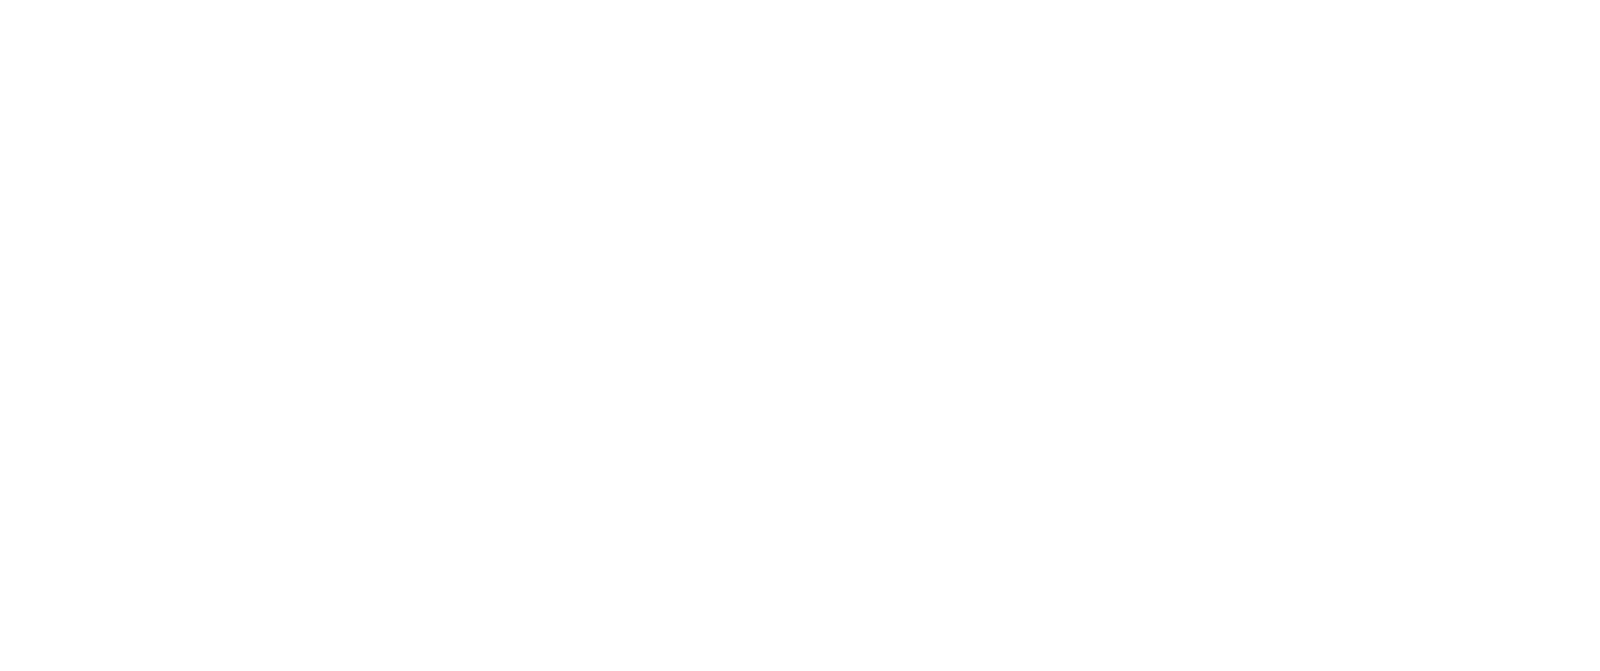 LACCO TOWER ザスパクサツ群馬 2018公式応援ソング「雨後晴」 3月11日より配信、スタジアム内で販売、スペシャルライブも！サムネイル画像!